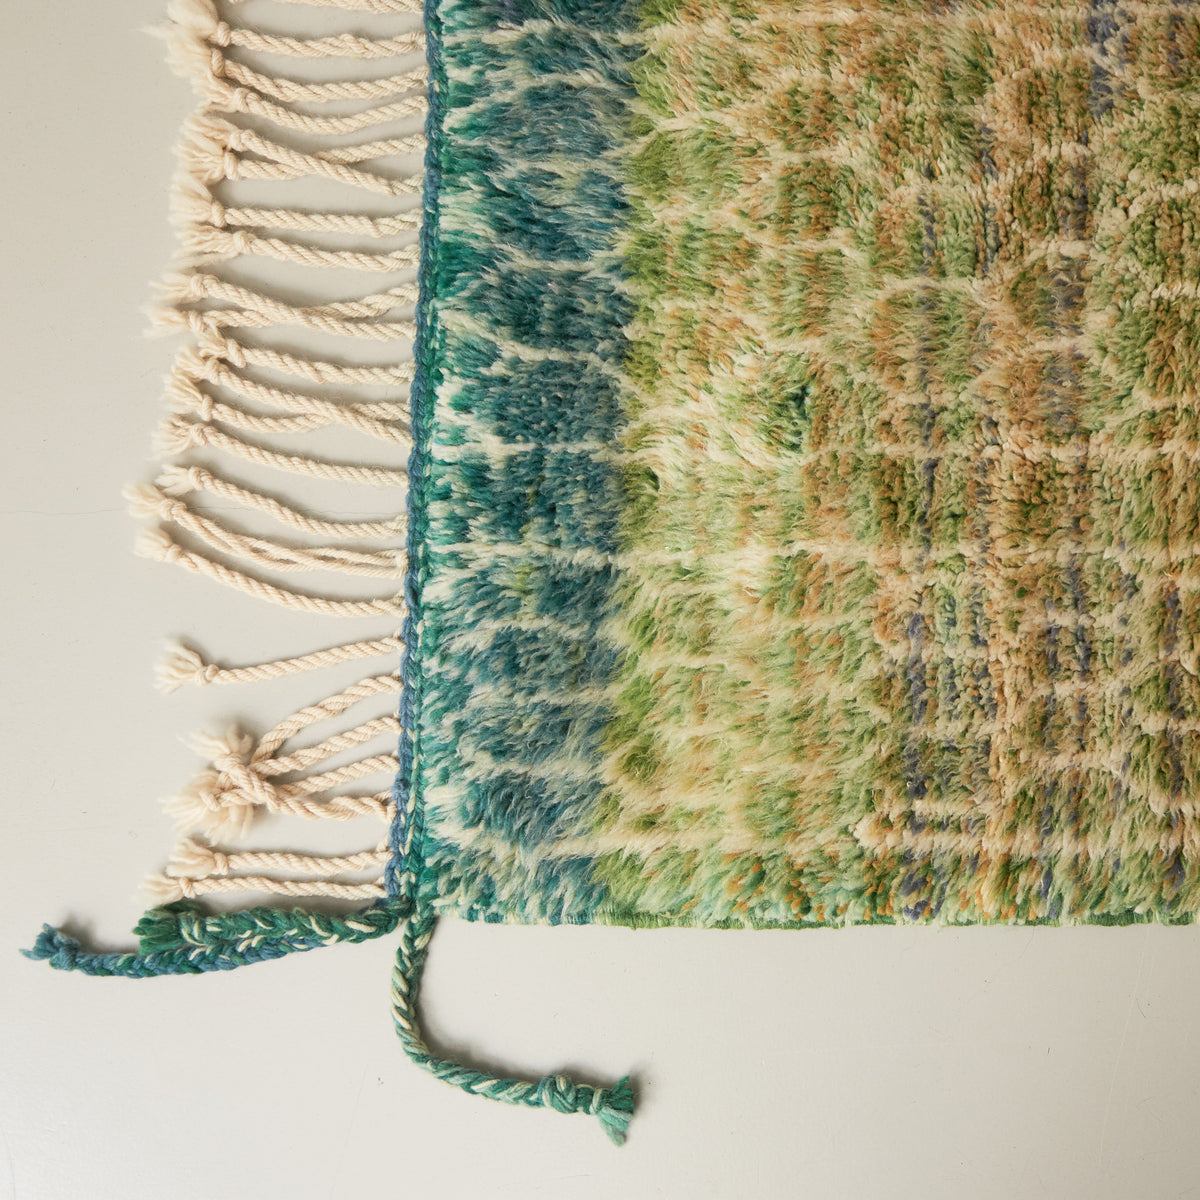 dettaglio della lunga frangia e dell'angolo di un tappeto beni mrirt con molte sfumature di verdi e linee sottili bianche